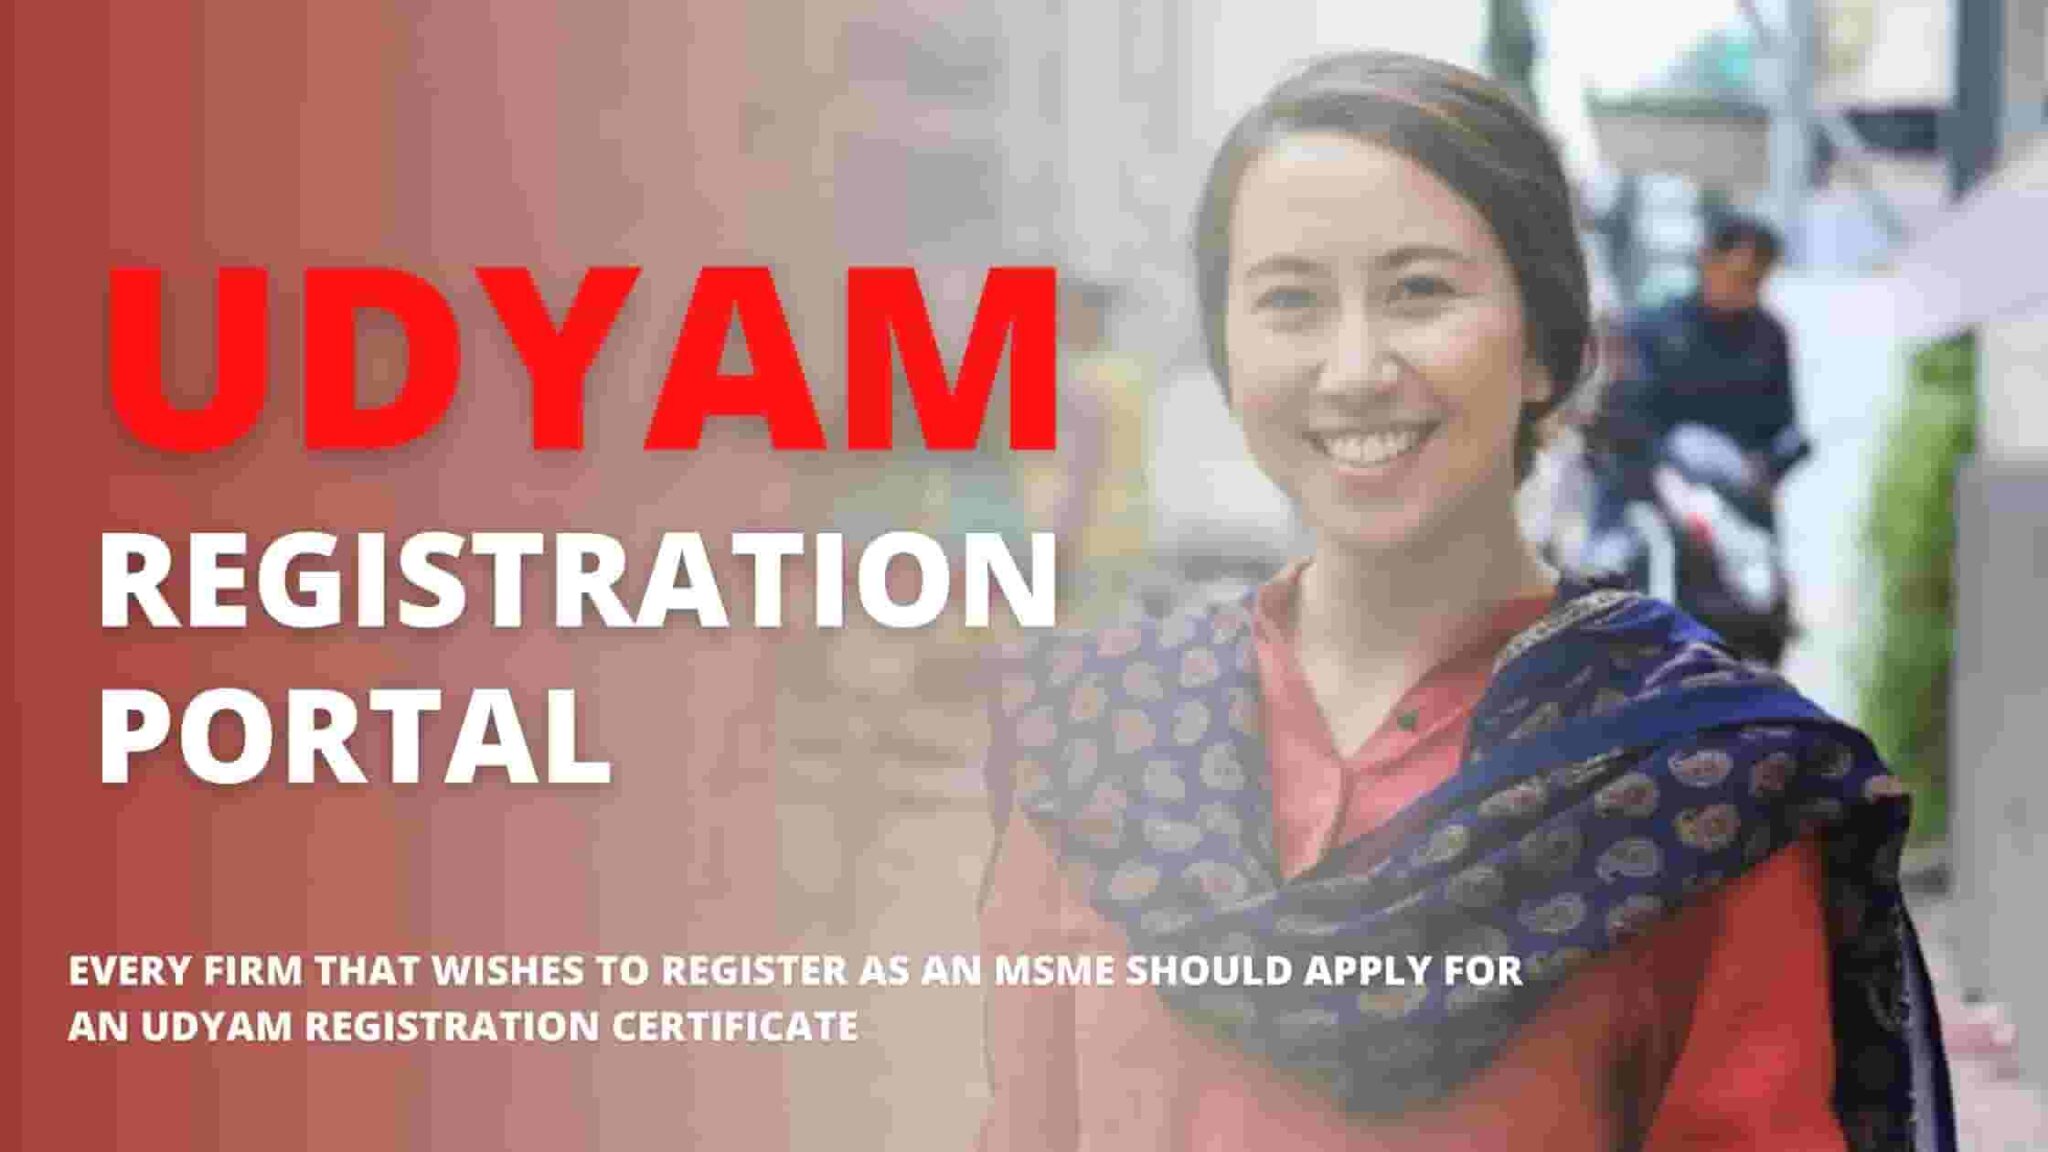 Udyam Registration Portal udyamregistration.gov.in – Government Portal